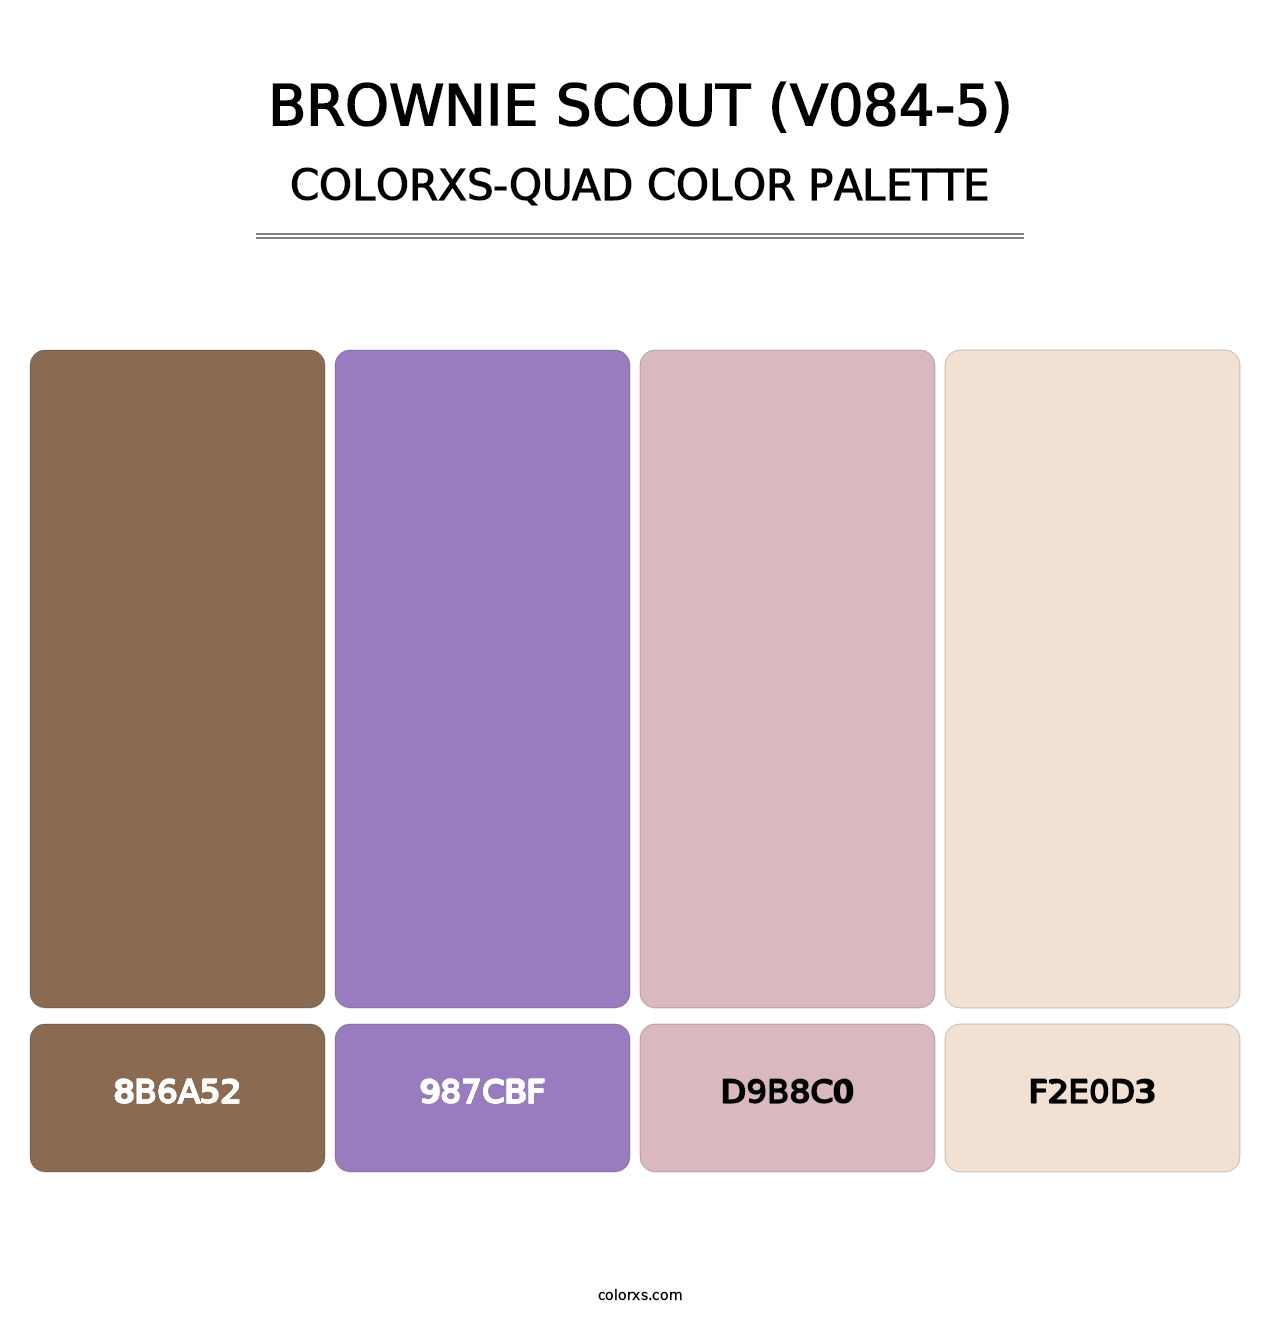 Brownie Scout (V084-5) - Colorxs Quad Palette